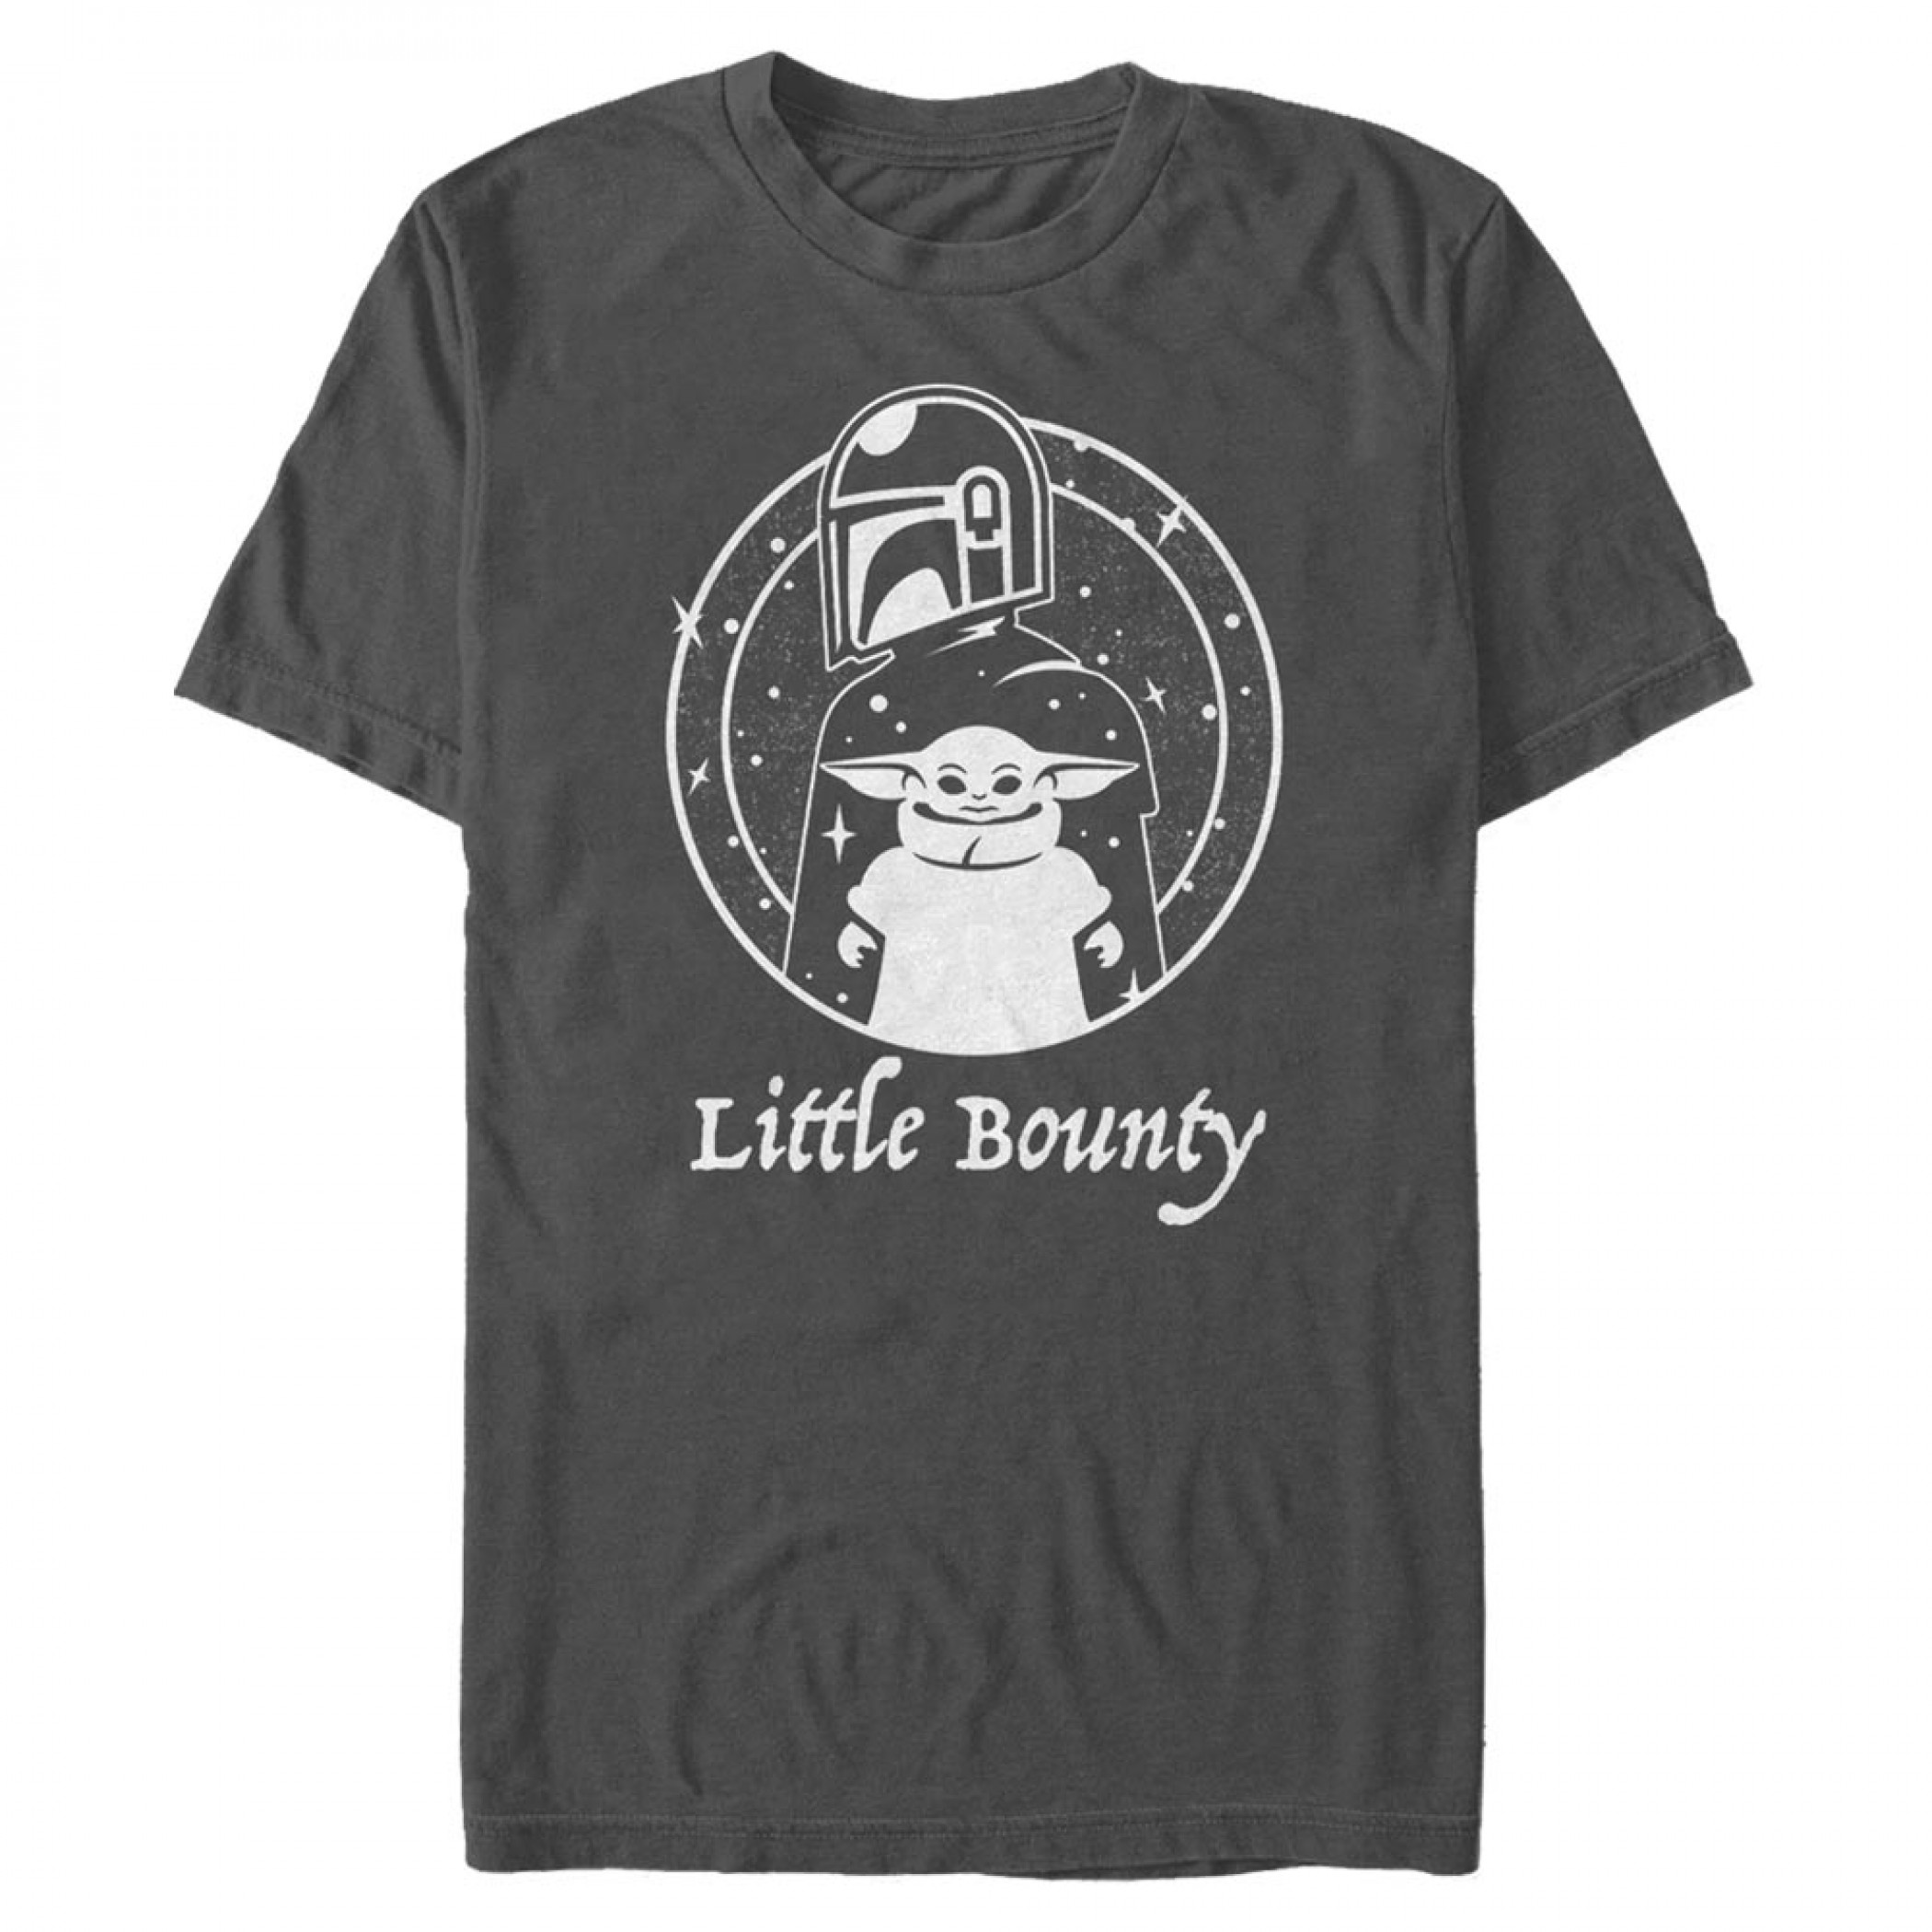 The Mandalorian Little Bounty Crest T-Shirt